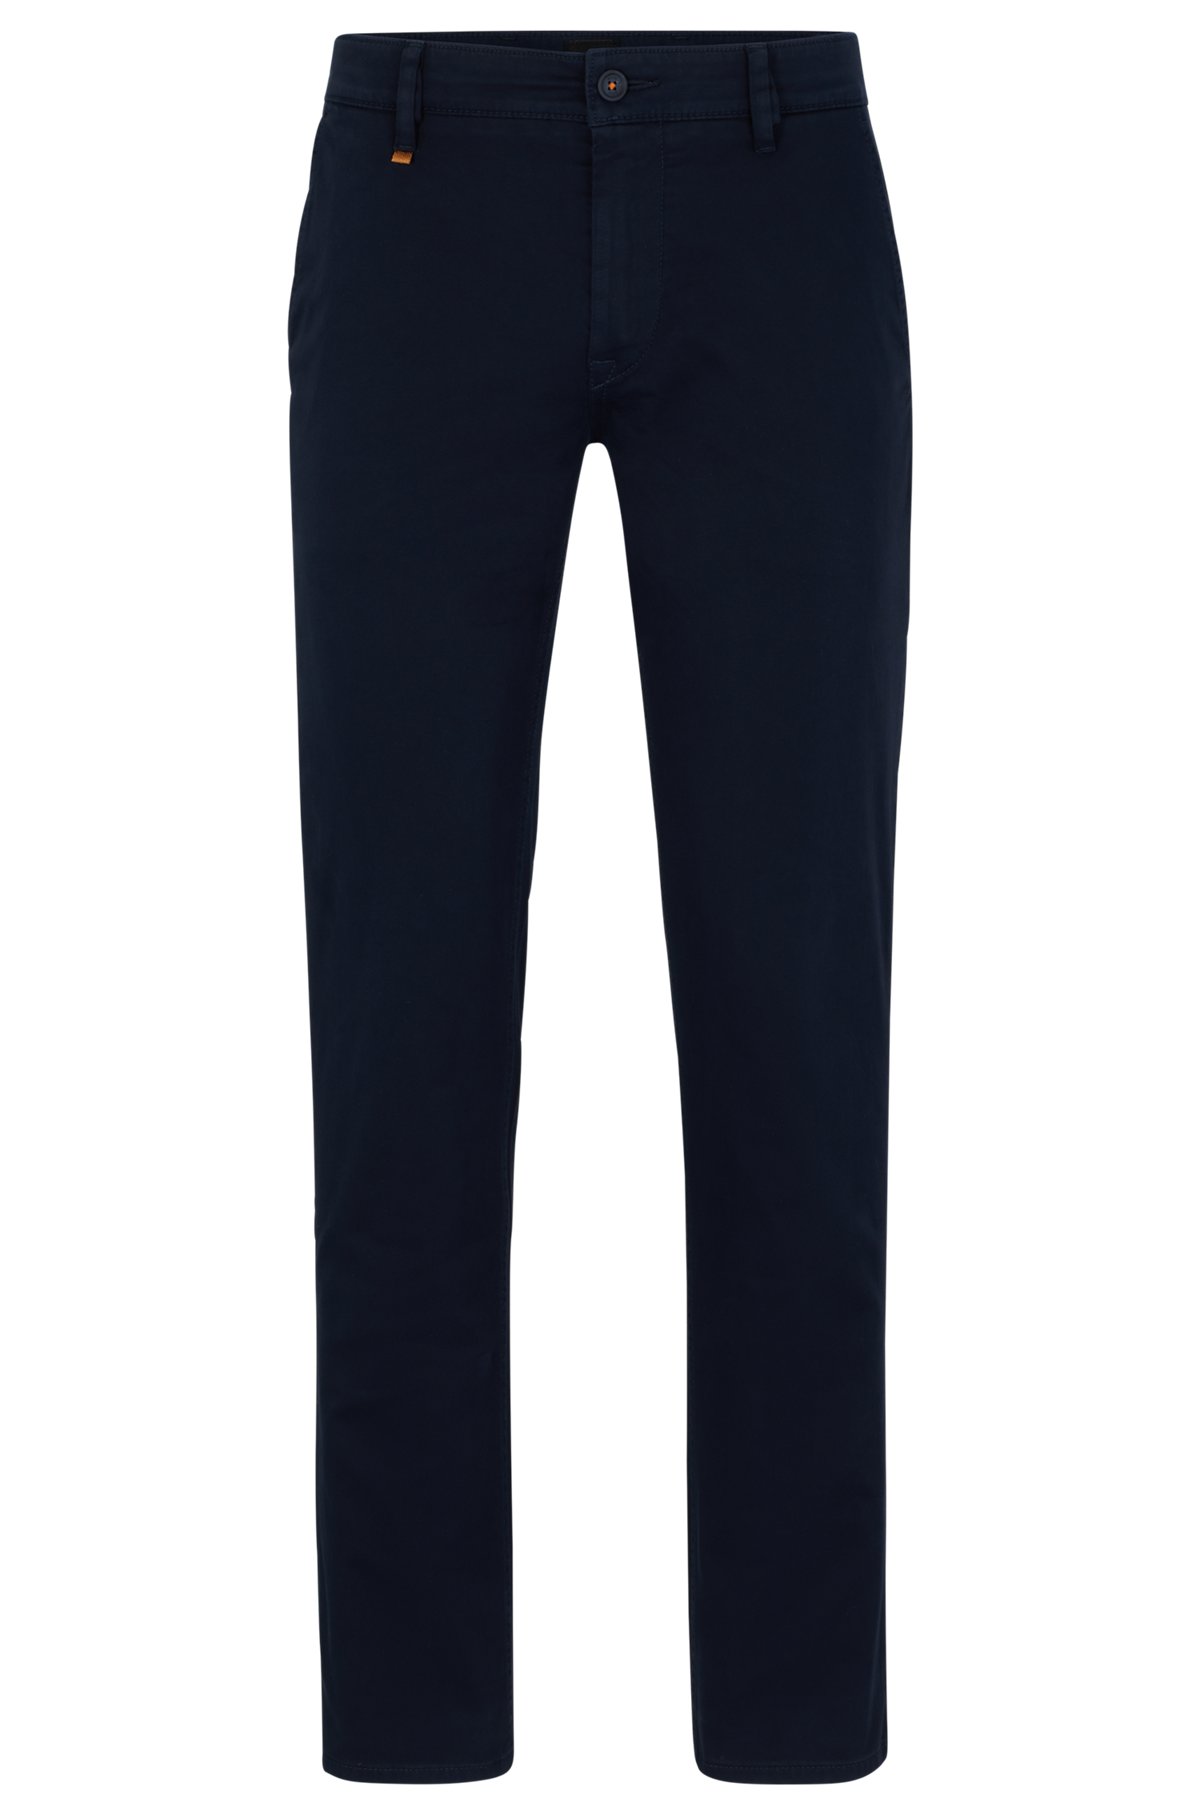 Pantaloni slim fit in satin di cotone elasticizzato, Blu scuro